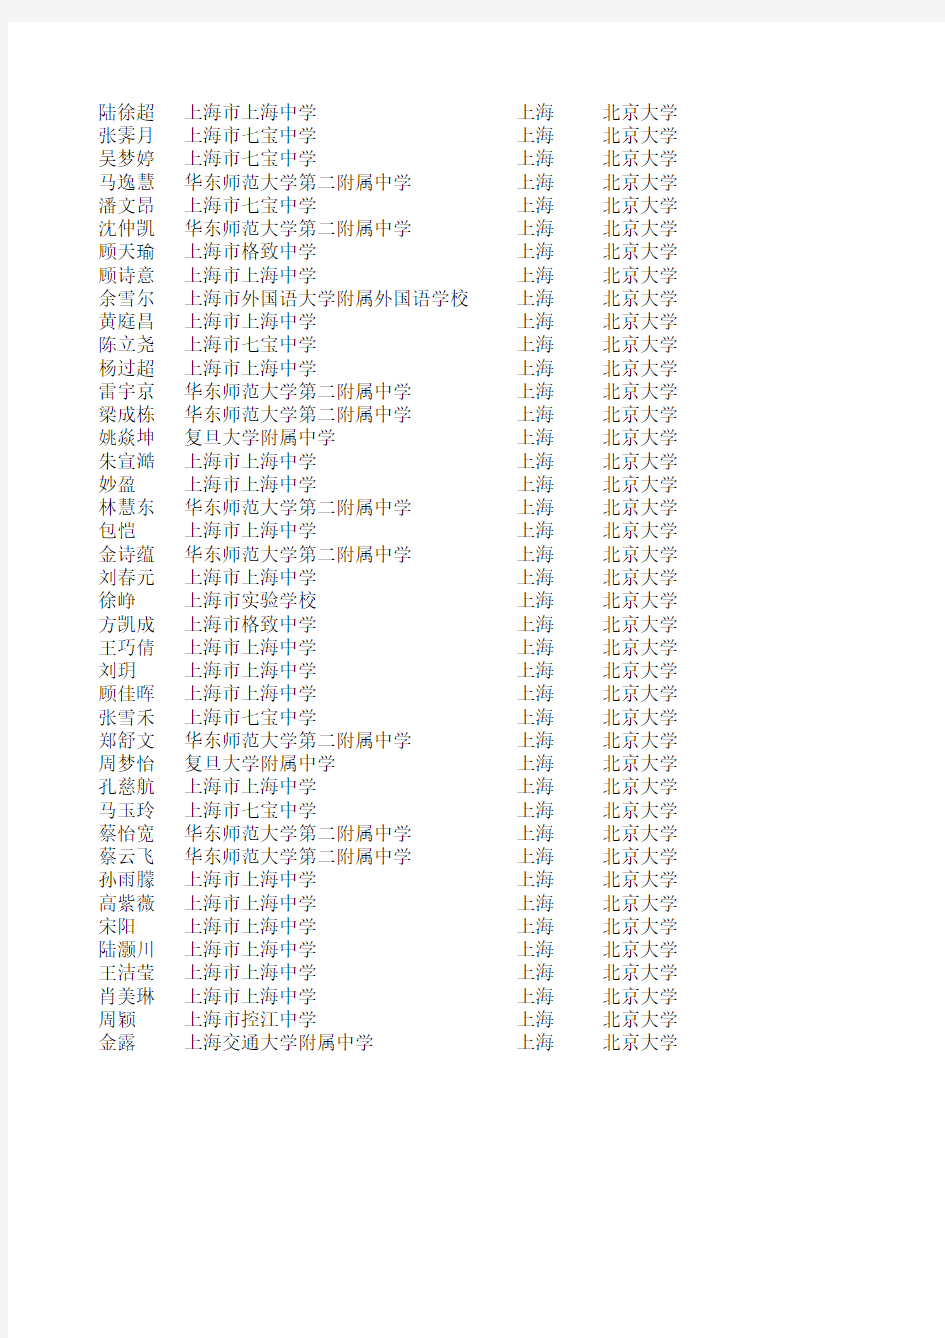 2011年北京大学自主招生录取名单(上海考生)